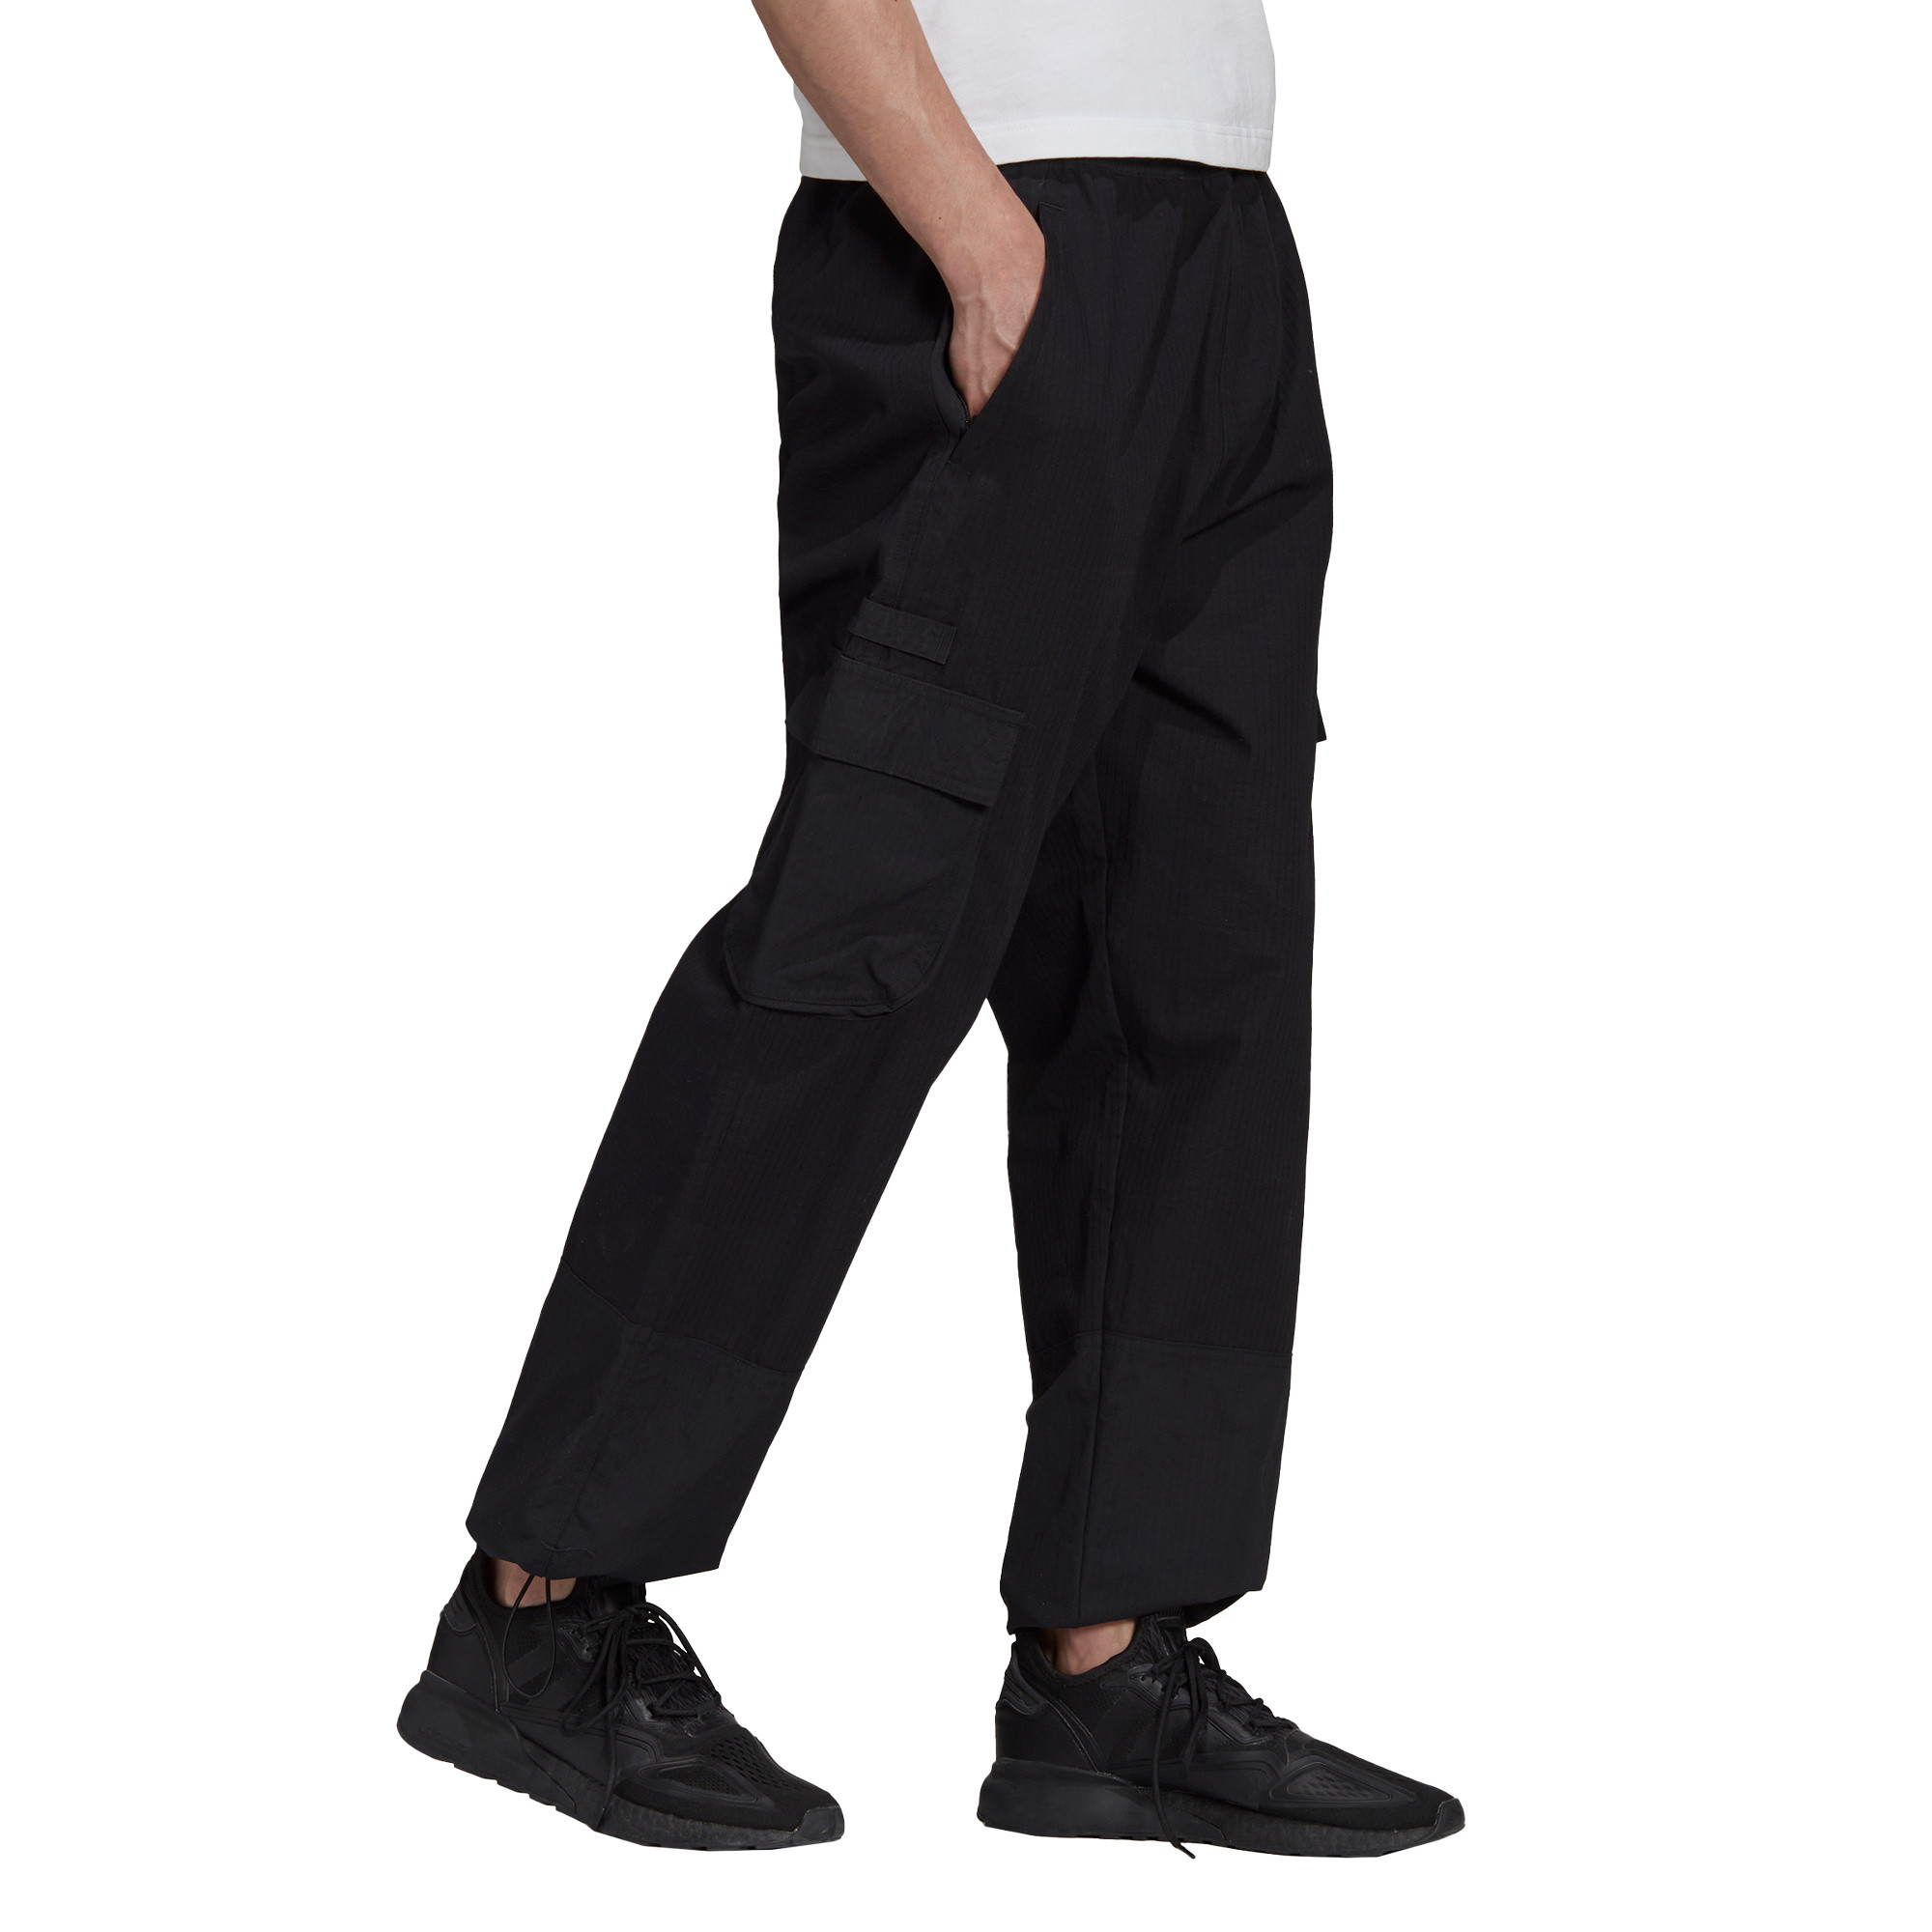 Pantaloni adidas Adventure Cargo, Nero, large image number 2